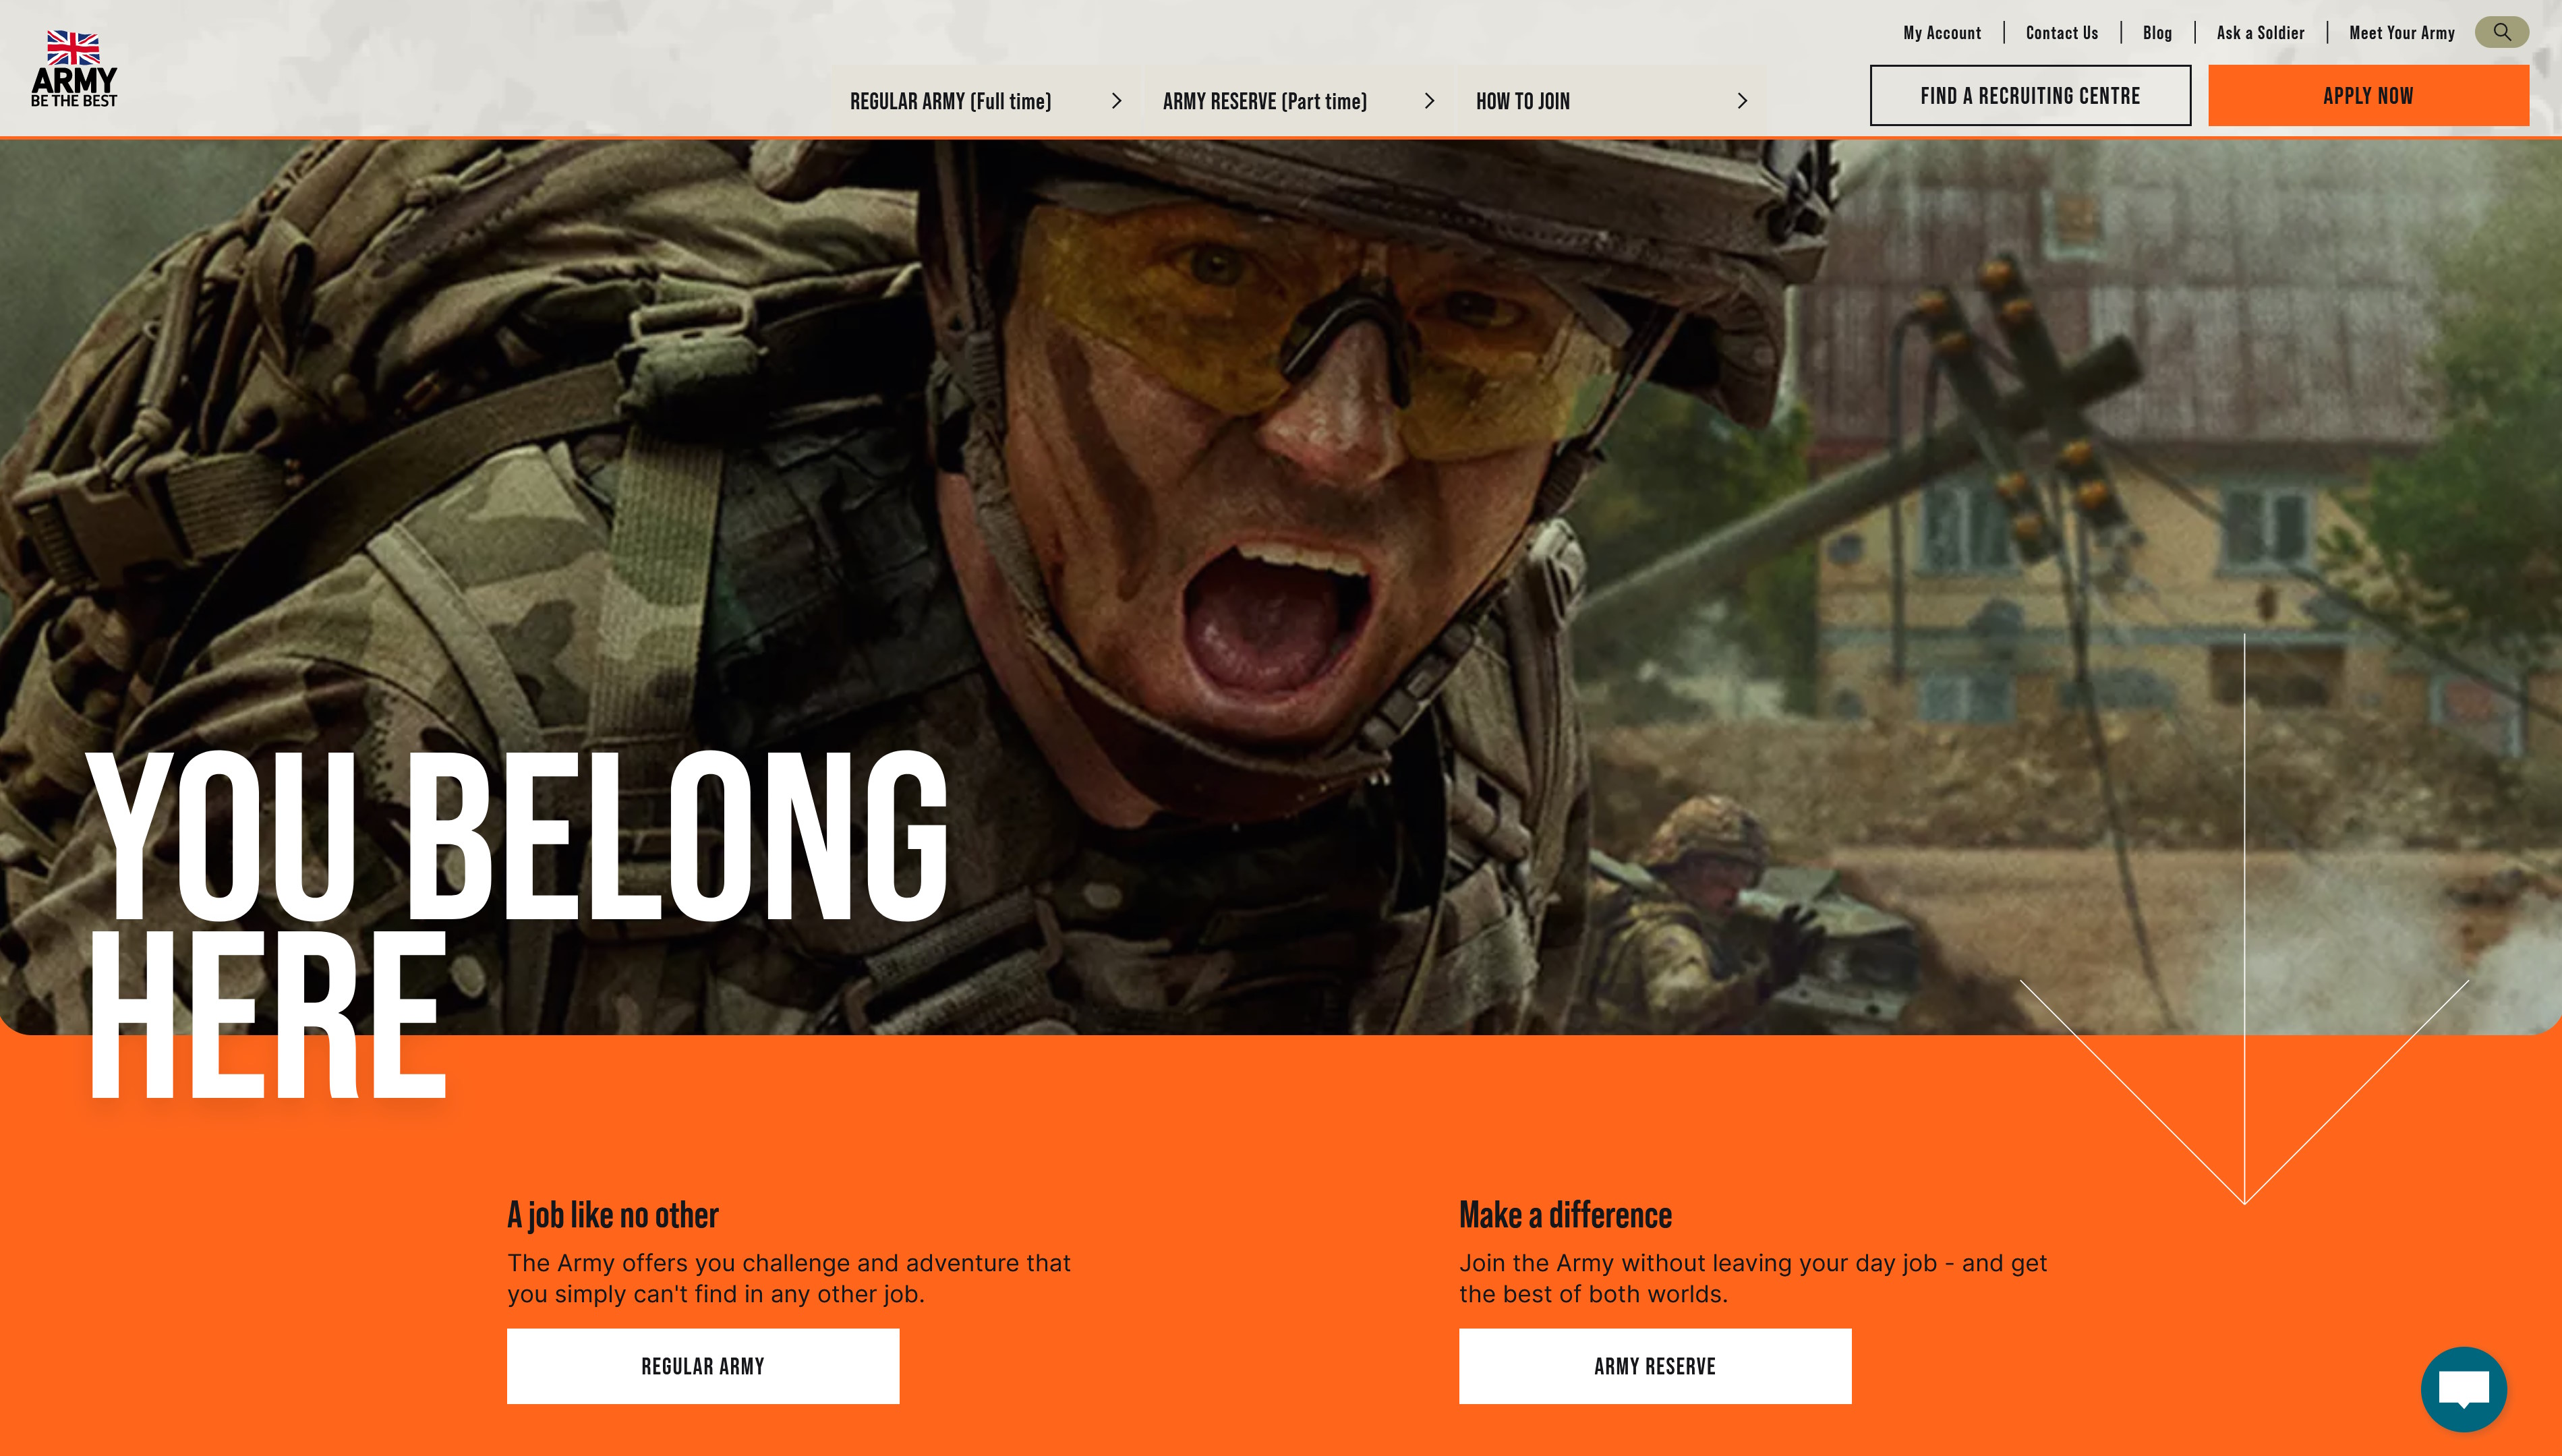 En-tête du site Web Emplois et recrutement de l'armée britannique - photo d'un soldat et les mots 